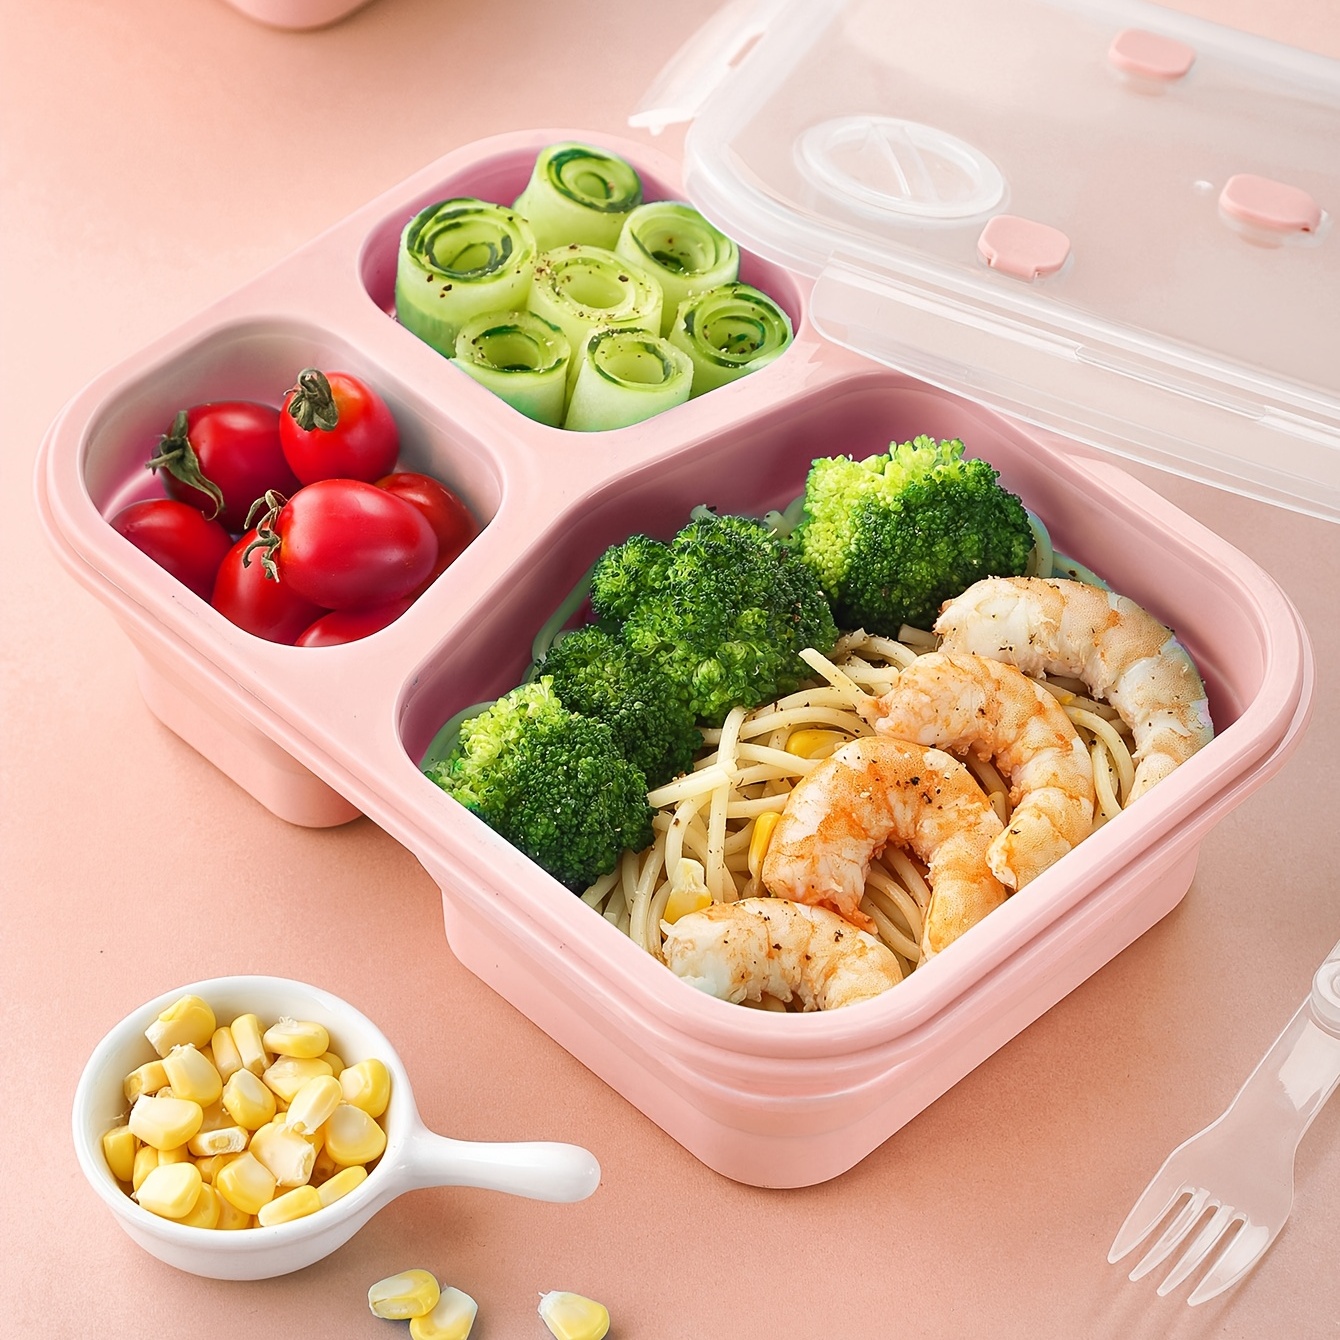 1 Pièce Bento Box Pliable Pour Boîte À Lunch, Boîte À Lunch Adulte